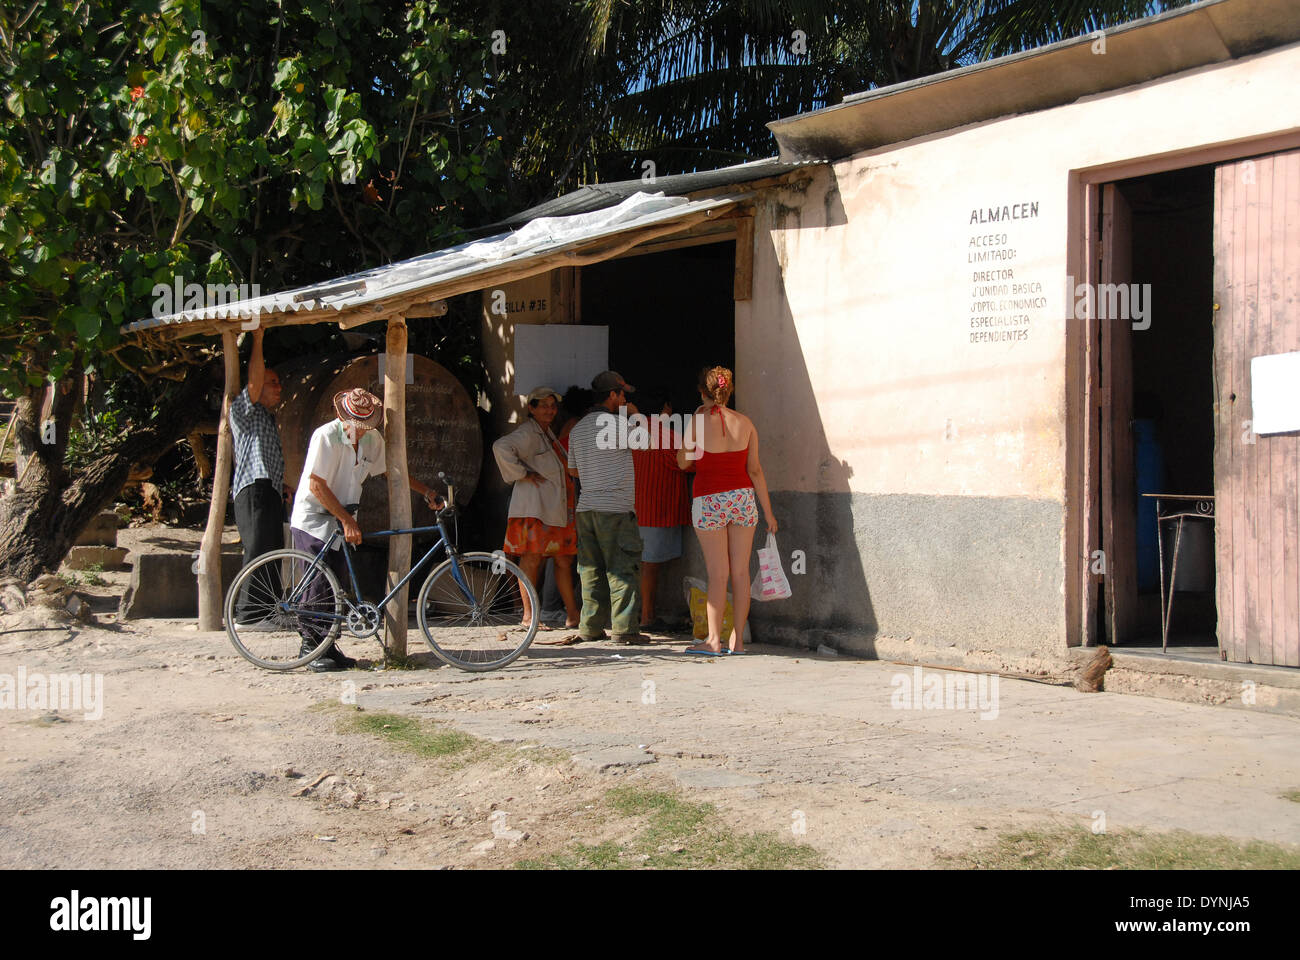 Una razione cubano shop in un villaggio vicino a Guardalavaca, con il popolo cubano in attesa di essere servito Foto Stock